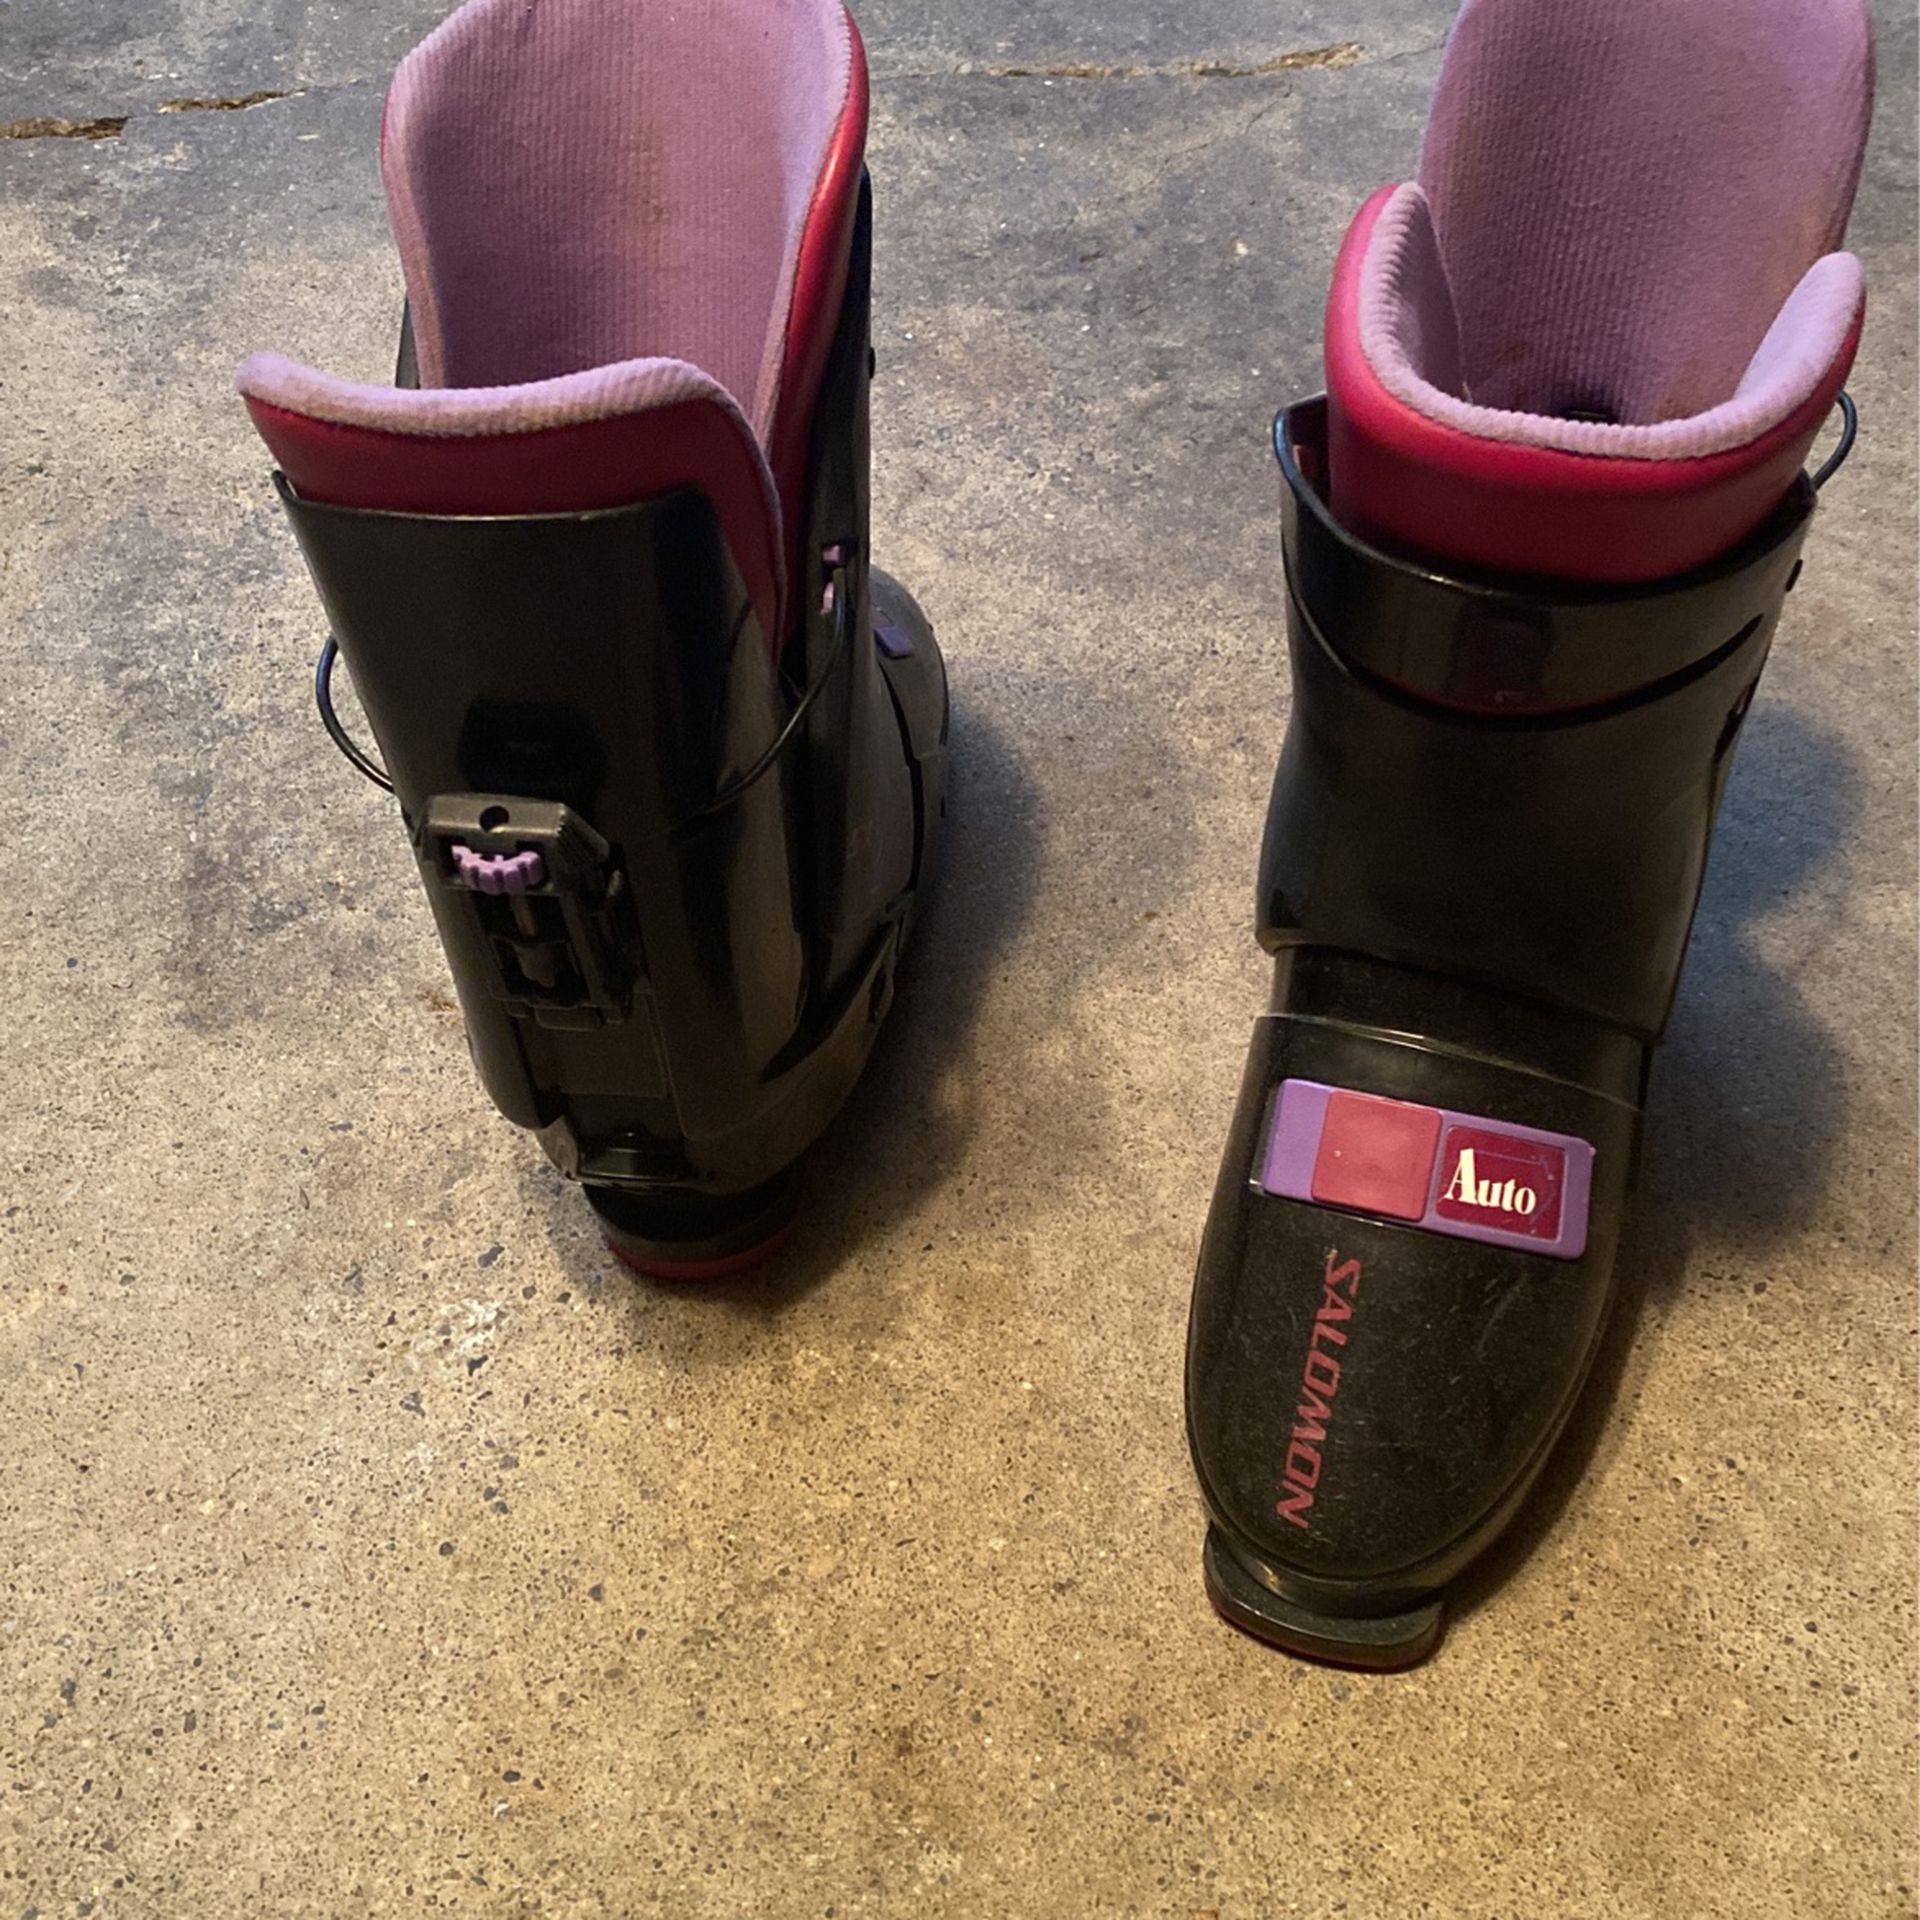 Ski boots - Salomon